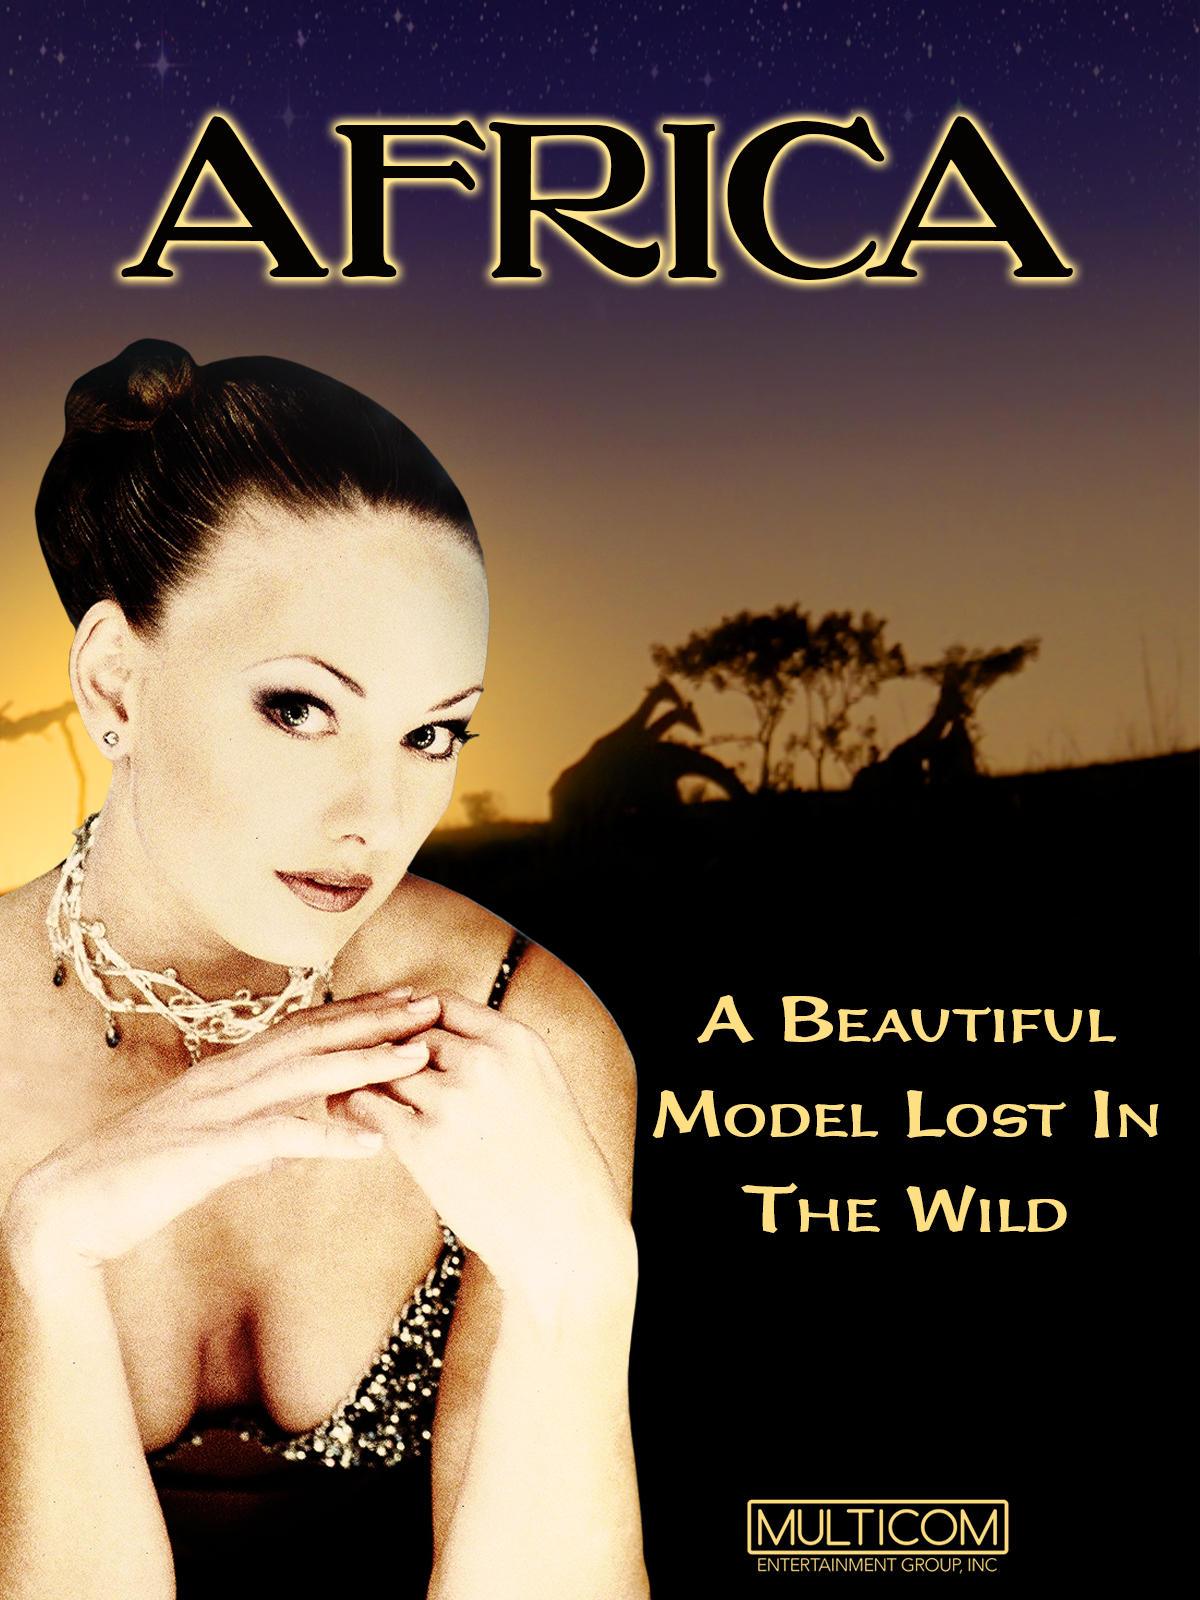 Africa (1999) Screenshot 3 